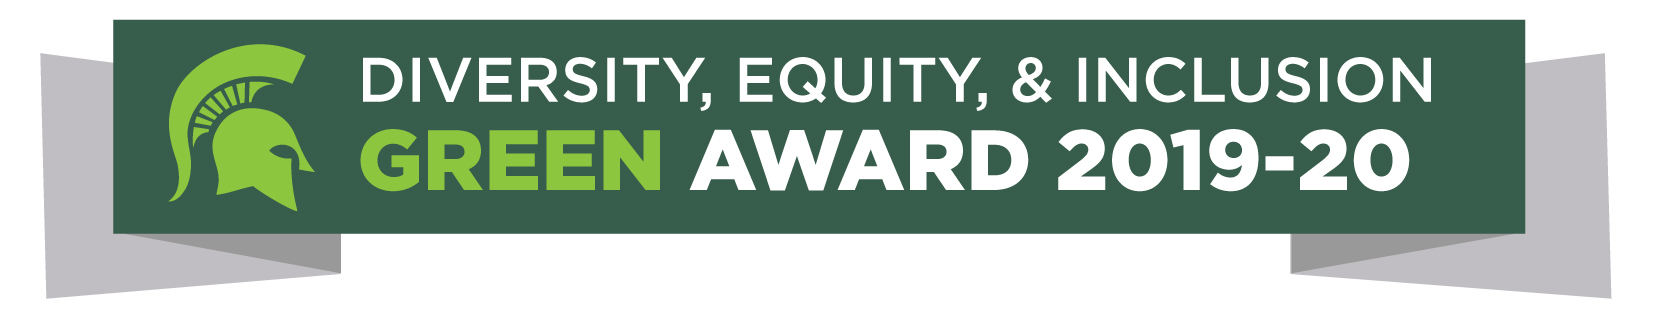 密歇根州立大学CANR 2019-2020年多样性、公平和包容绿色奖